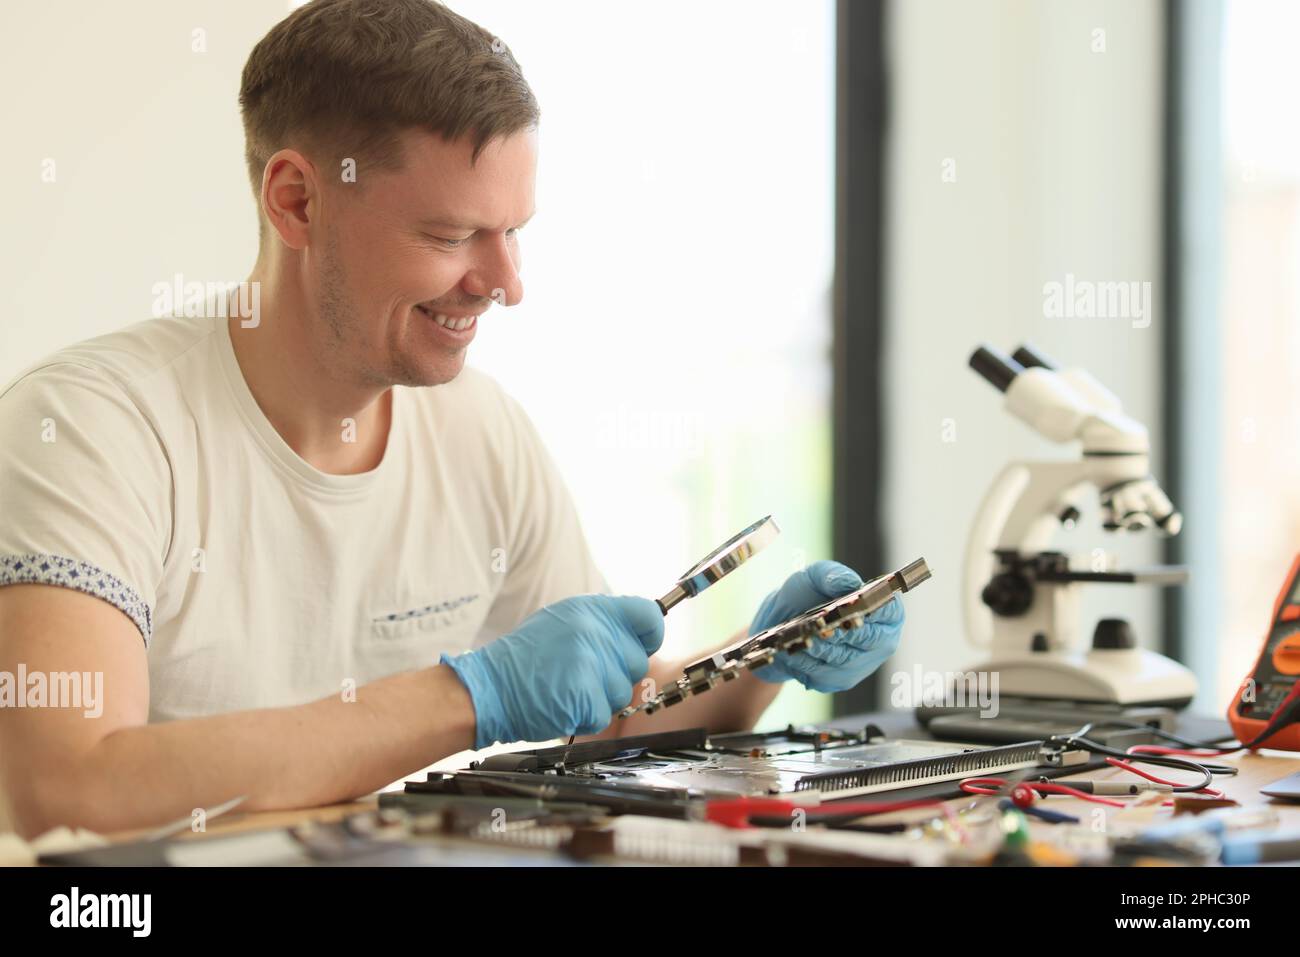 Smiling man studies broken motherboard in repair workshop Stock Photo